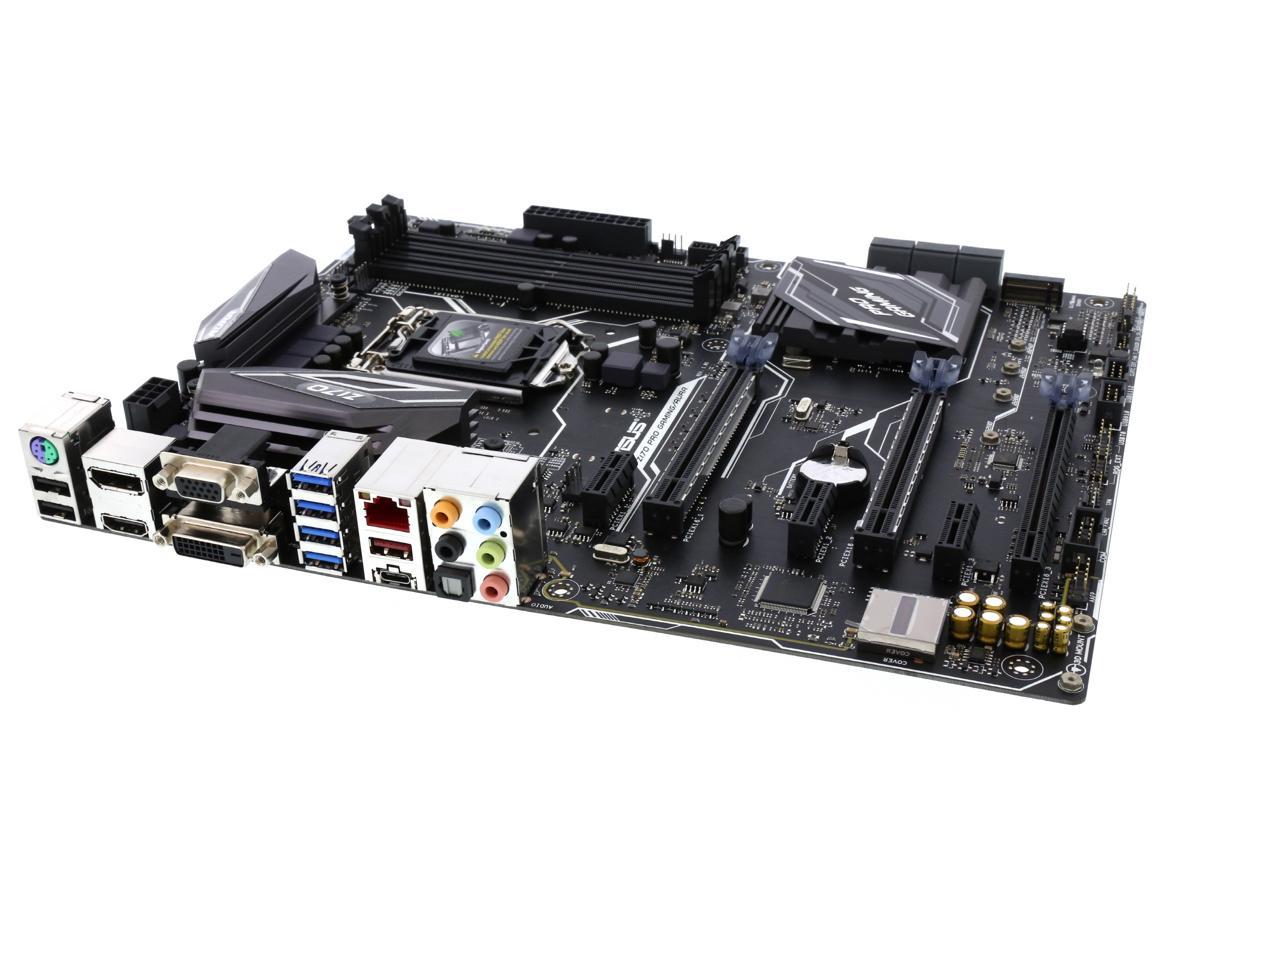 ASUS Z170 Pro Gaming/AURA LGA 1151 Intel Z170 HDMI SATA 6Gb/s USB 3.1 USB  3.0 ATX Motherboards - Intel